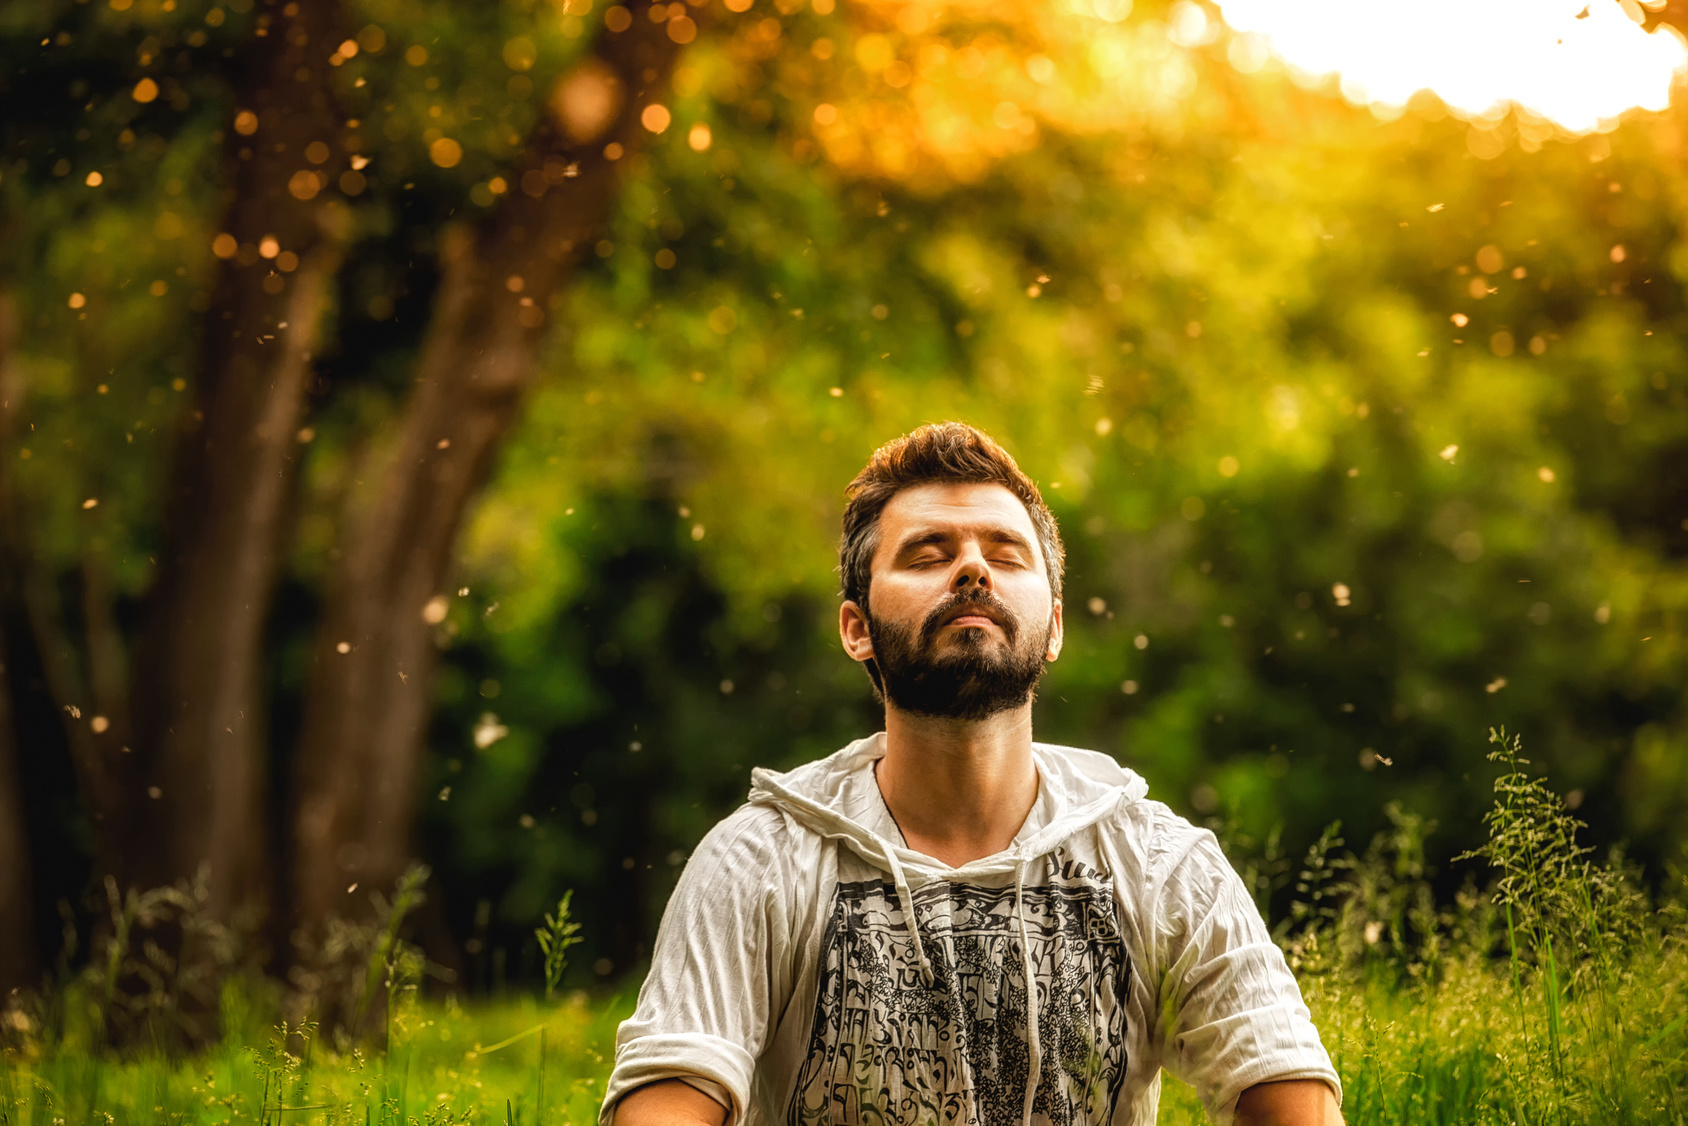 La méditation permet de combattre l'anxiété et le stress, notamment.